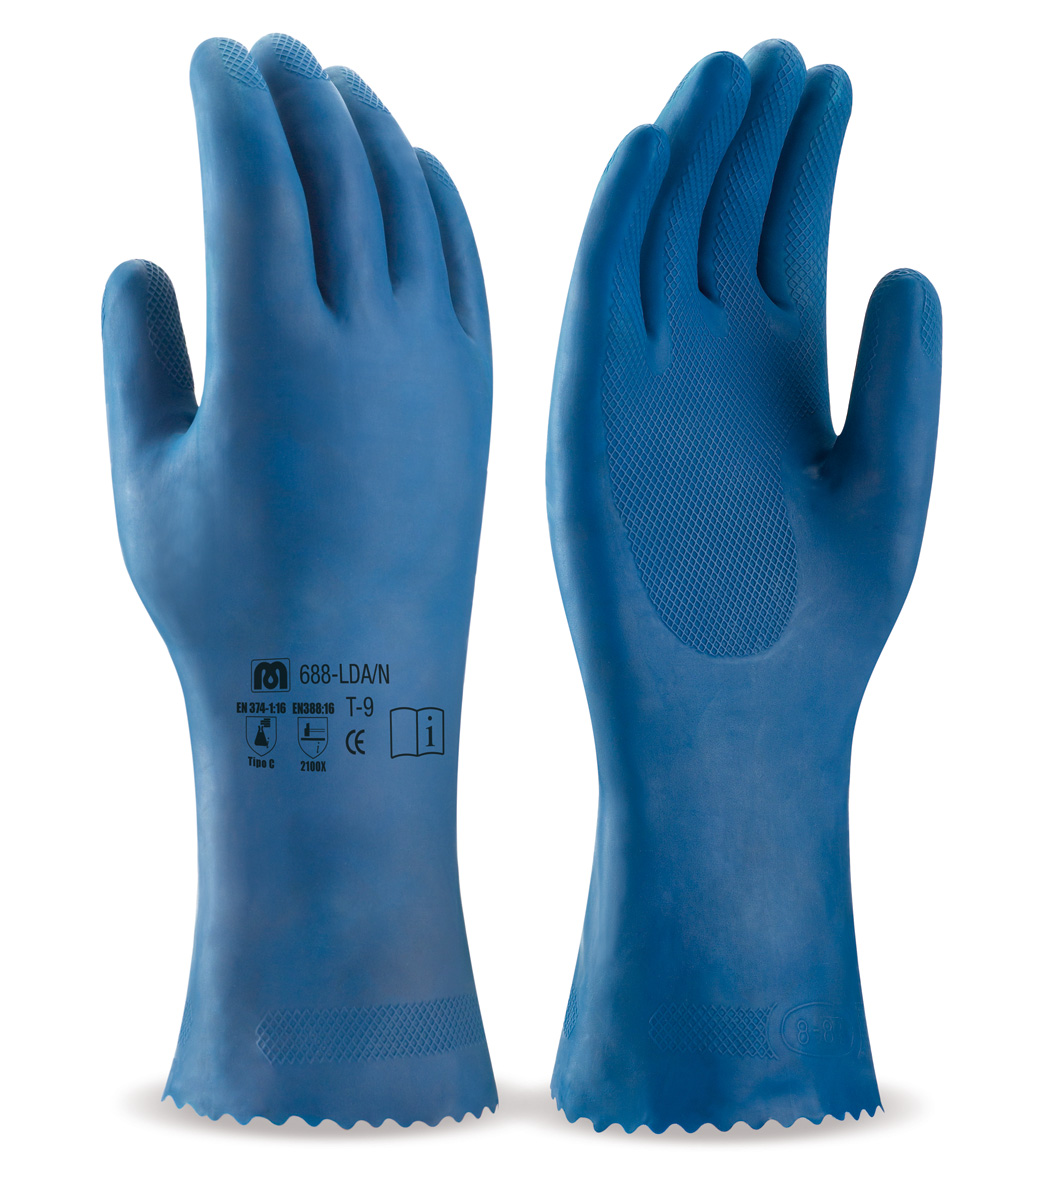 688-LDA/N Gants de Travail Latex sans support Gant type domestique en latex, coloris bleu, protection risques chimiques